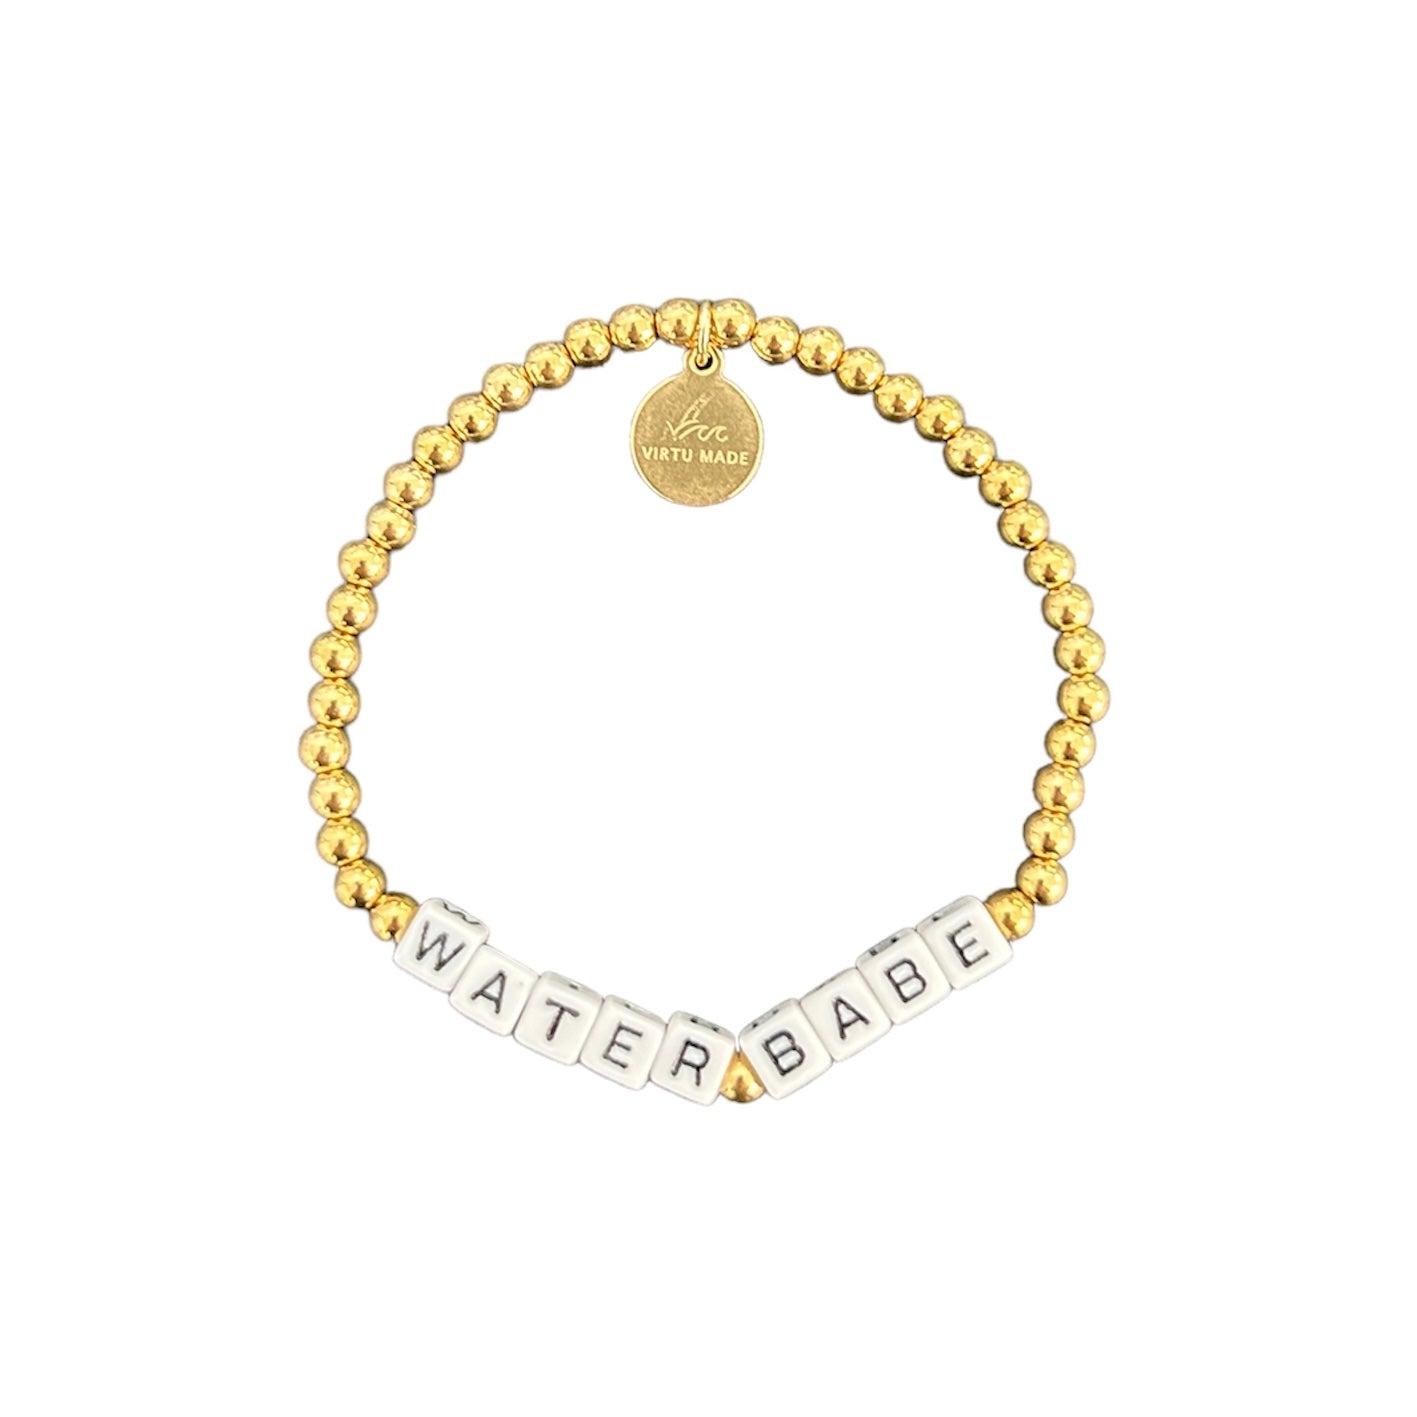 Water Babe Gold Beaded Bracelet